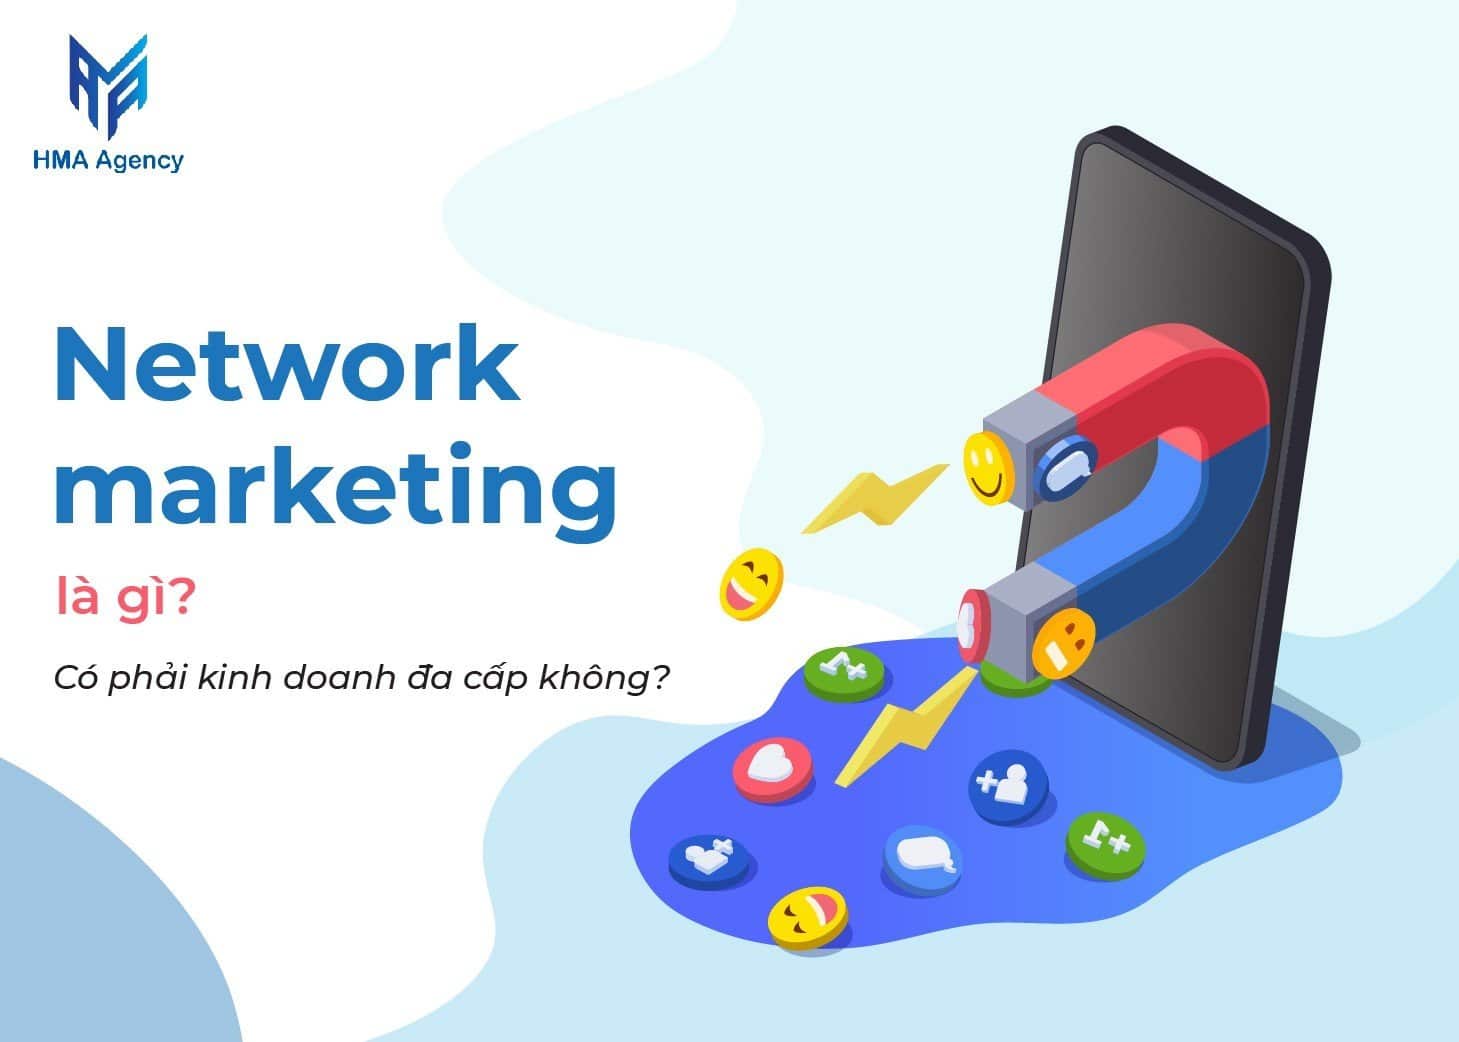 Network marketing là gì? Có phải kinh doanh đa cấp không?